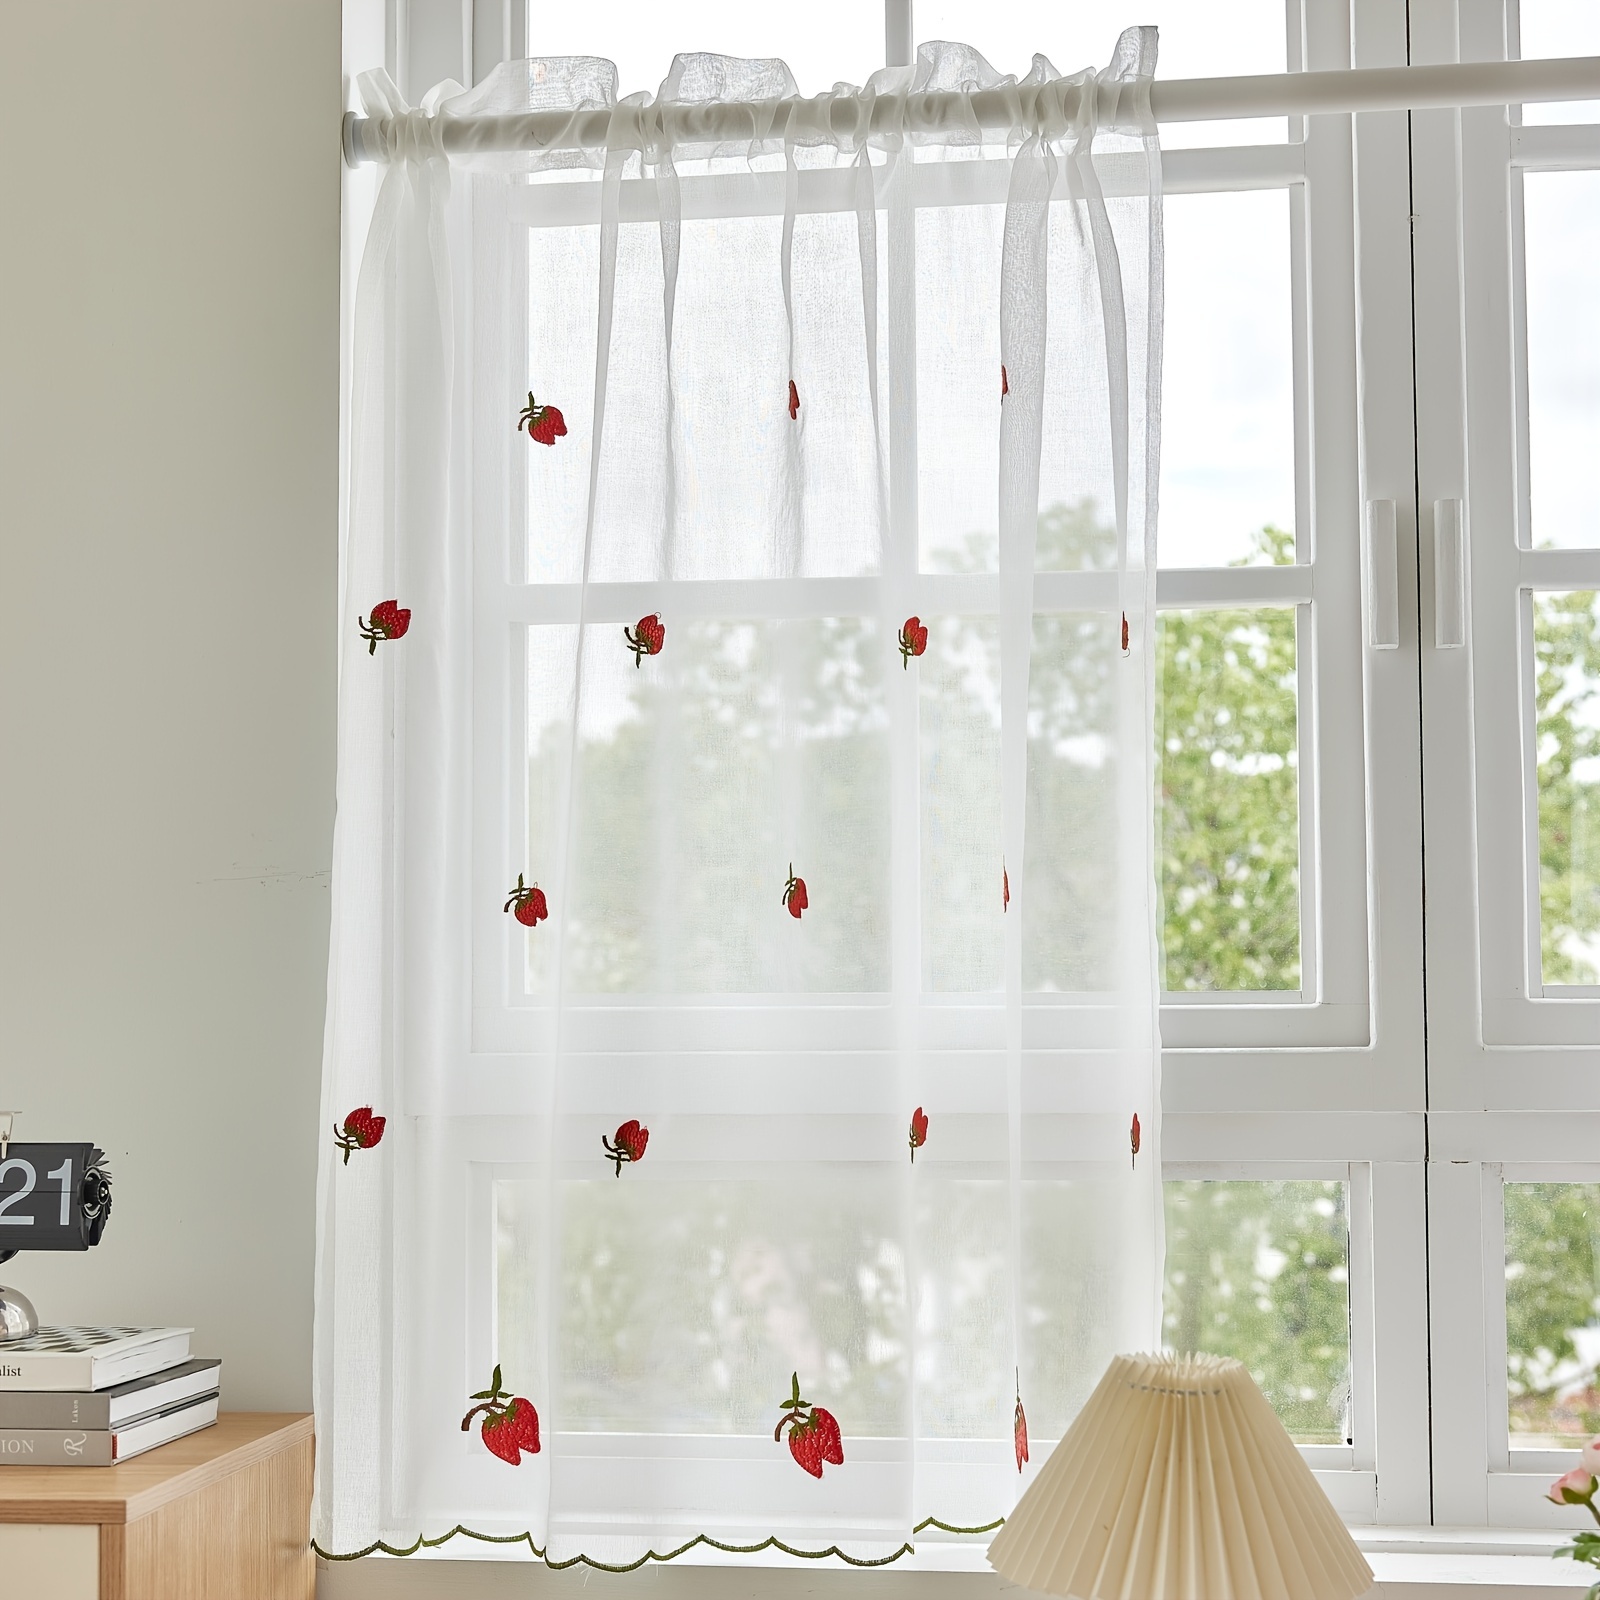 Cortinas para ventana de cocina, 83.9 in de largo, hojas de follaje retro  con ojales, cortina de ventana de 93.7 x 83.9 in